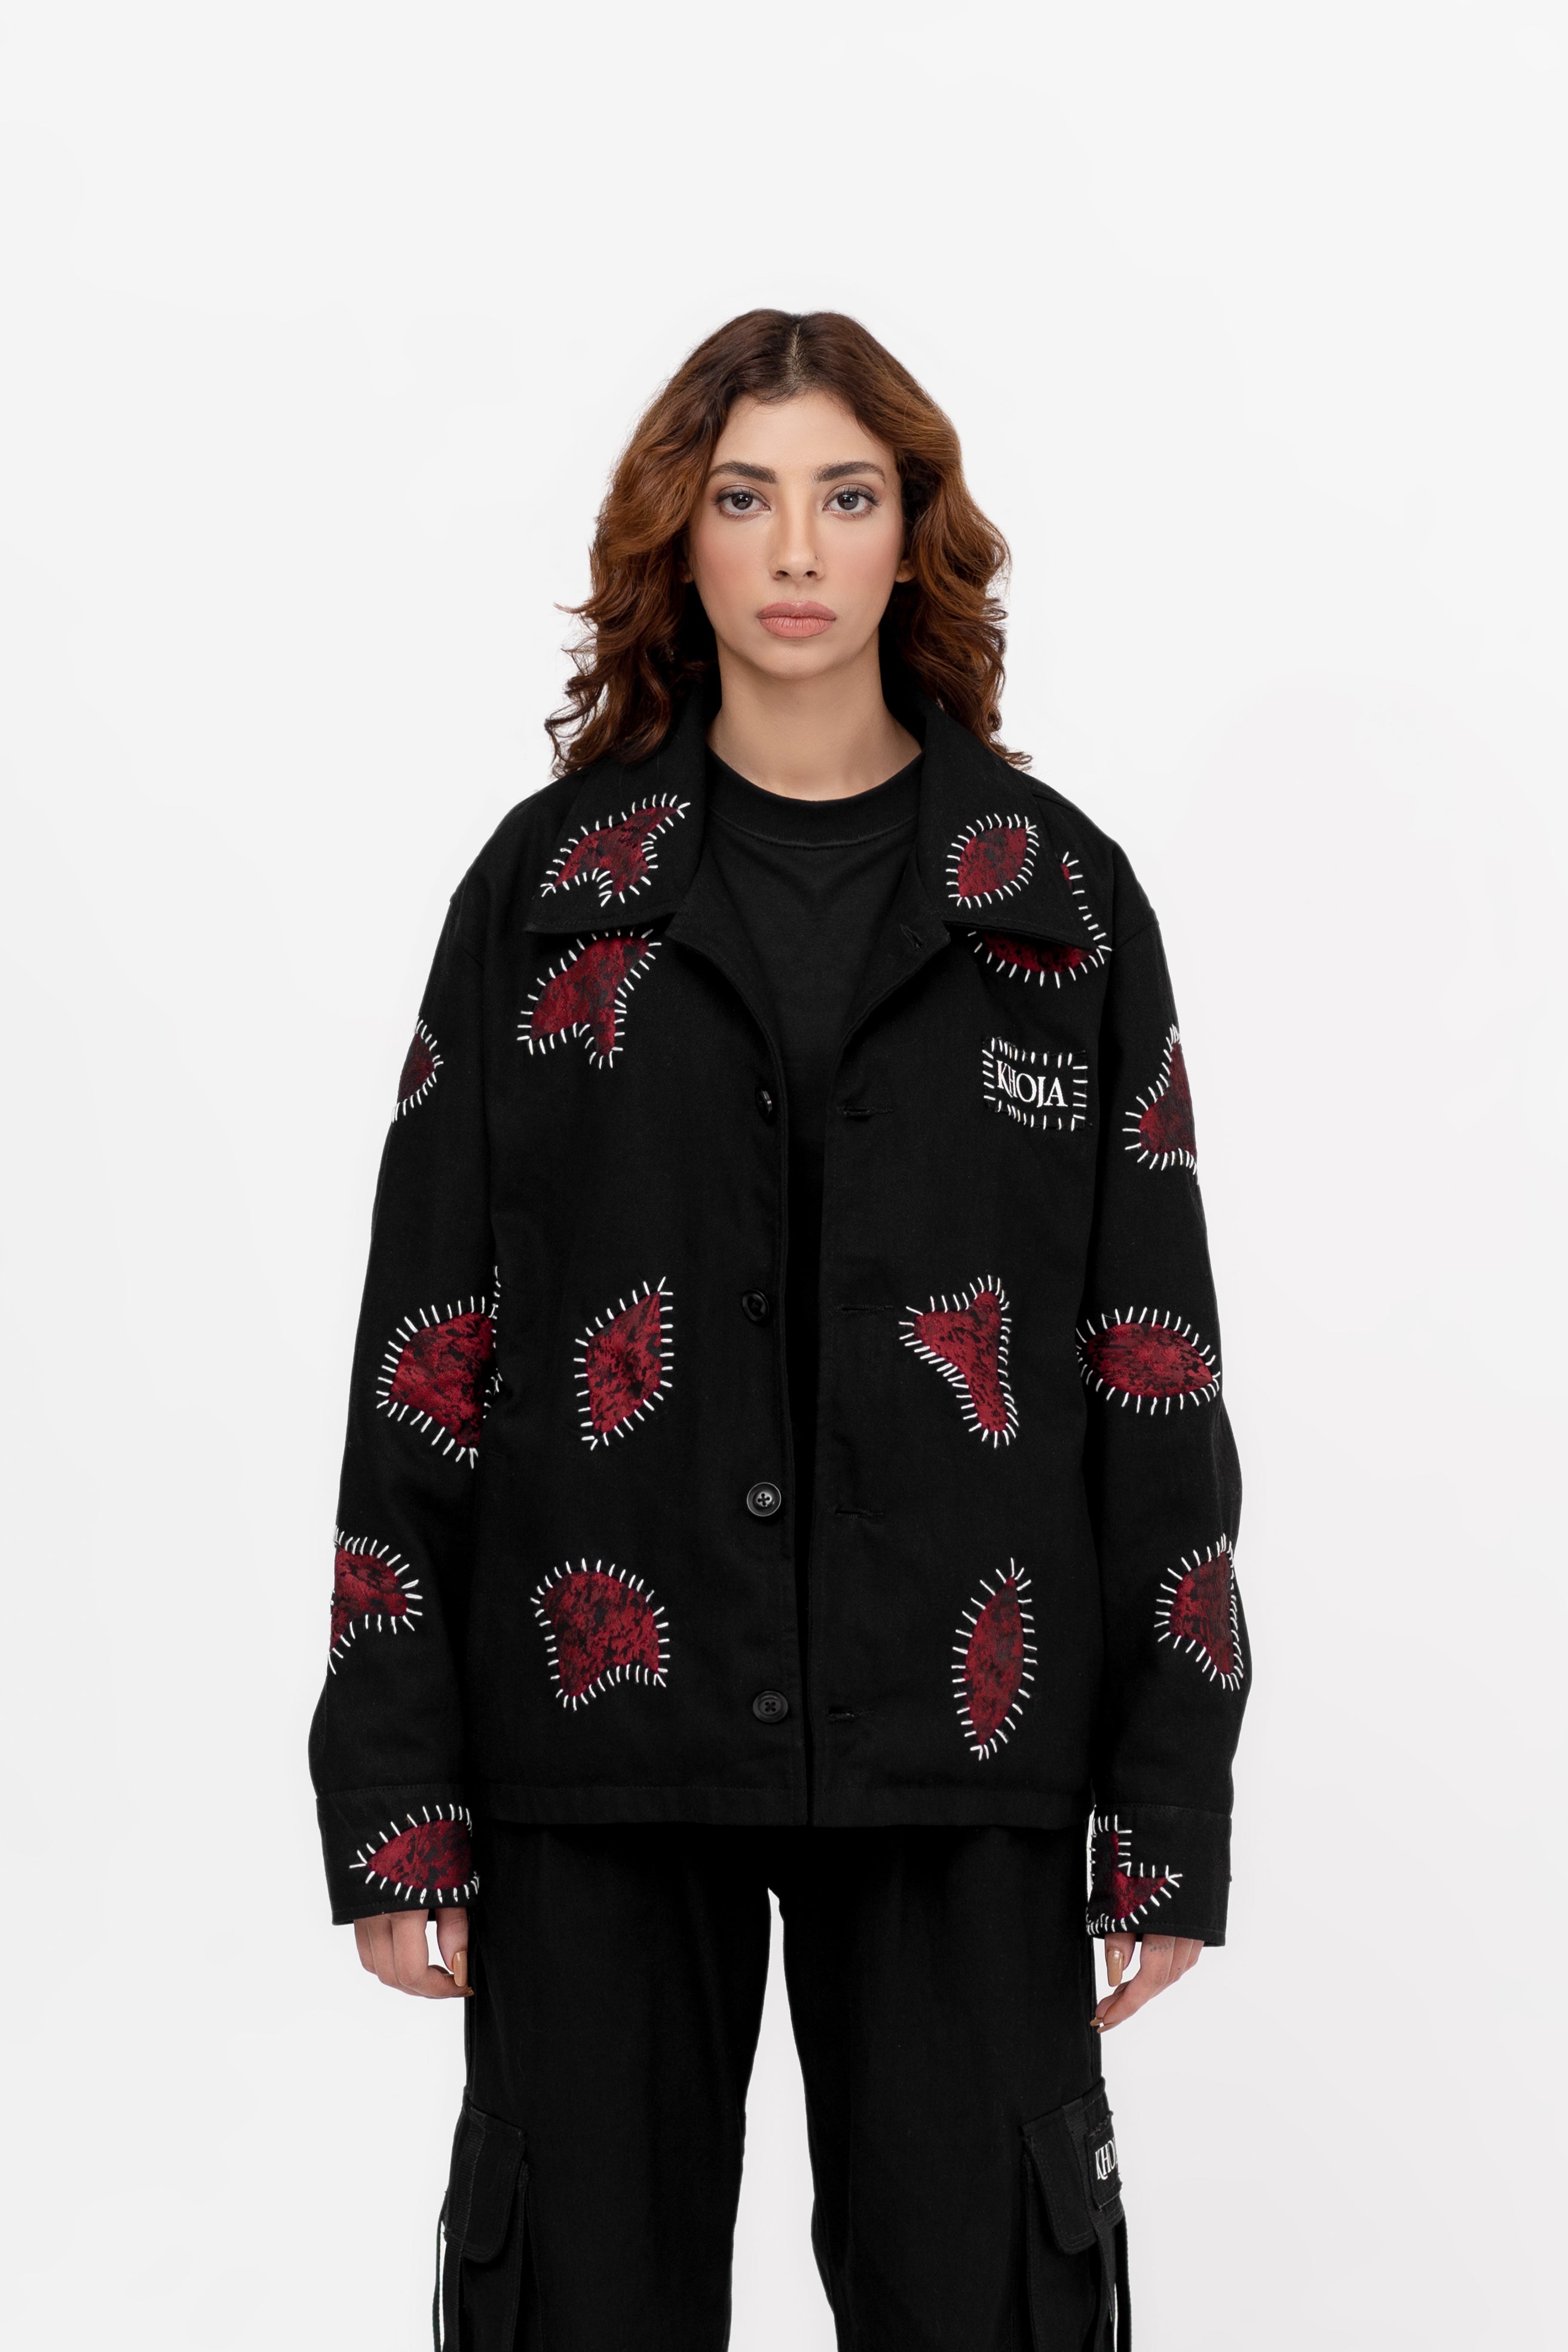 Scarlet Stitched Noir Woven Cotton Jacket